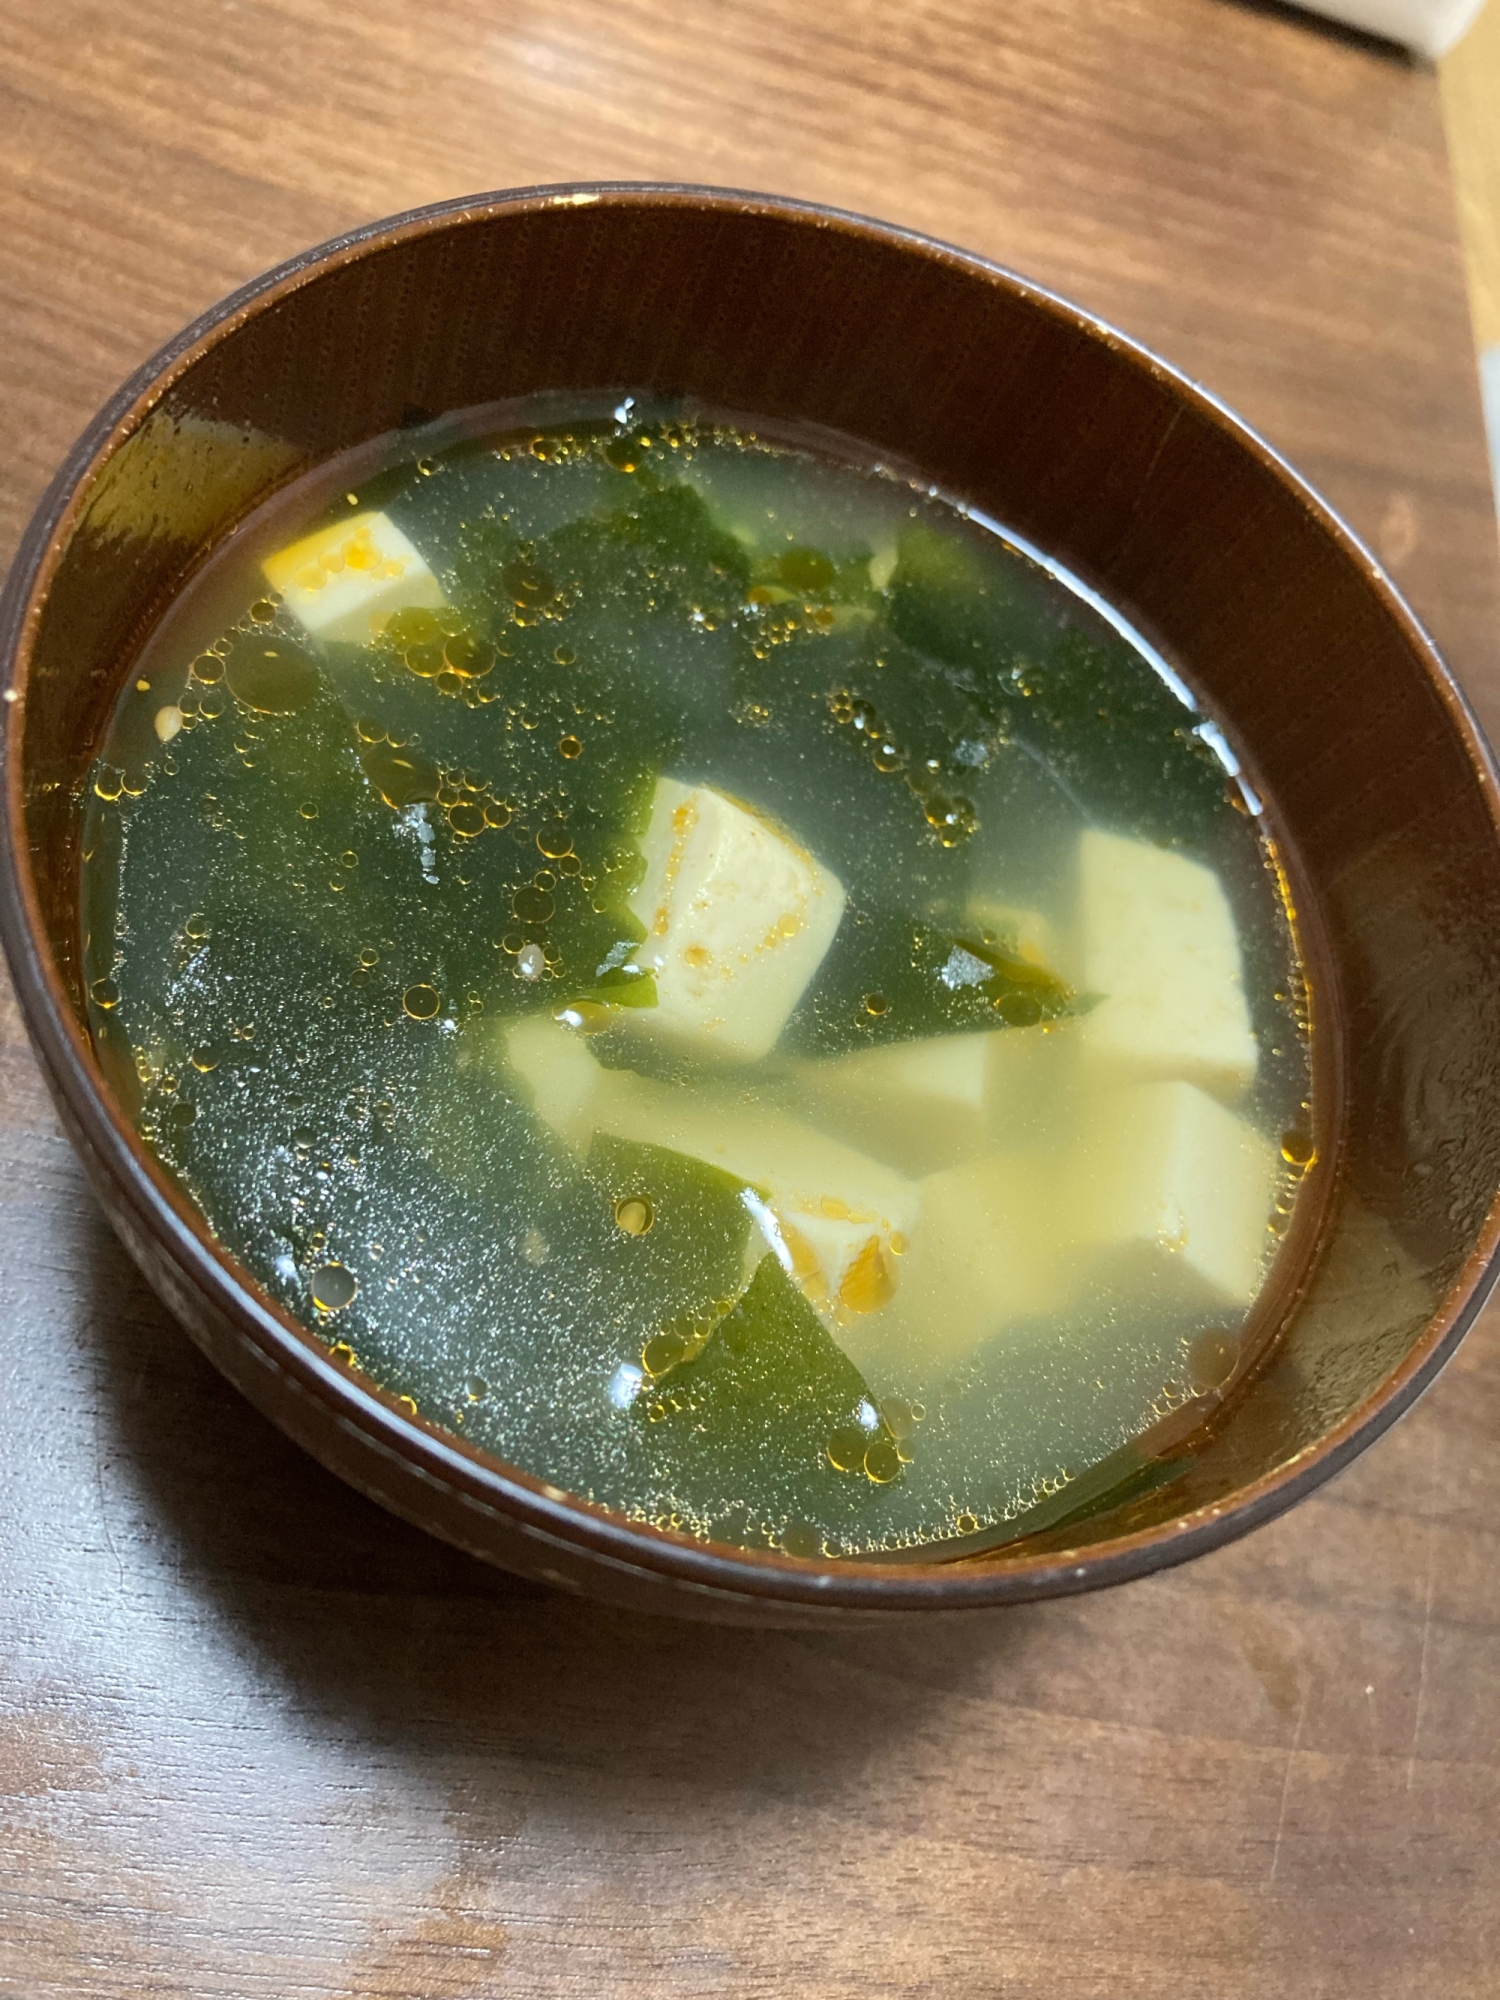 豆腐とわかめの中華スープ